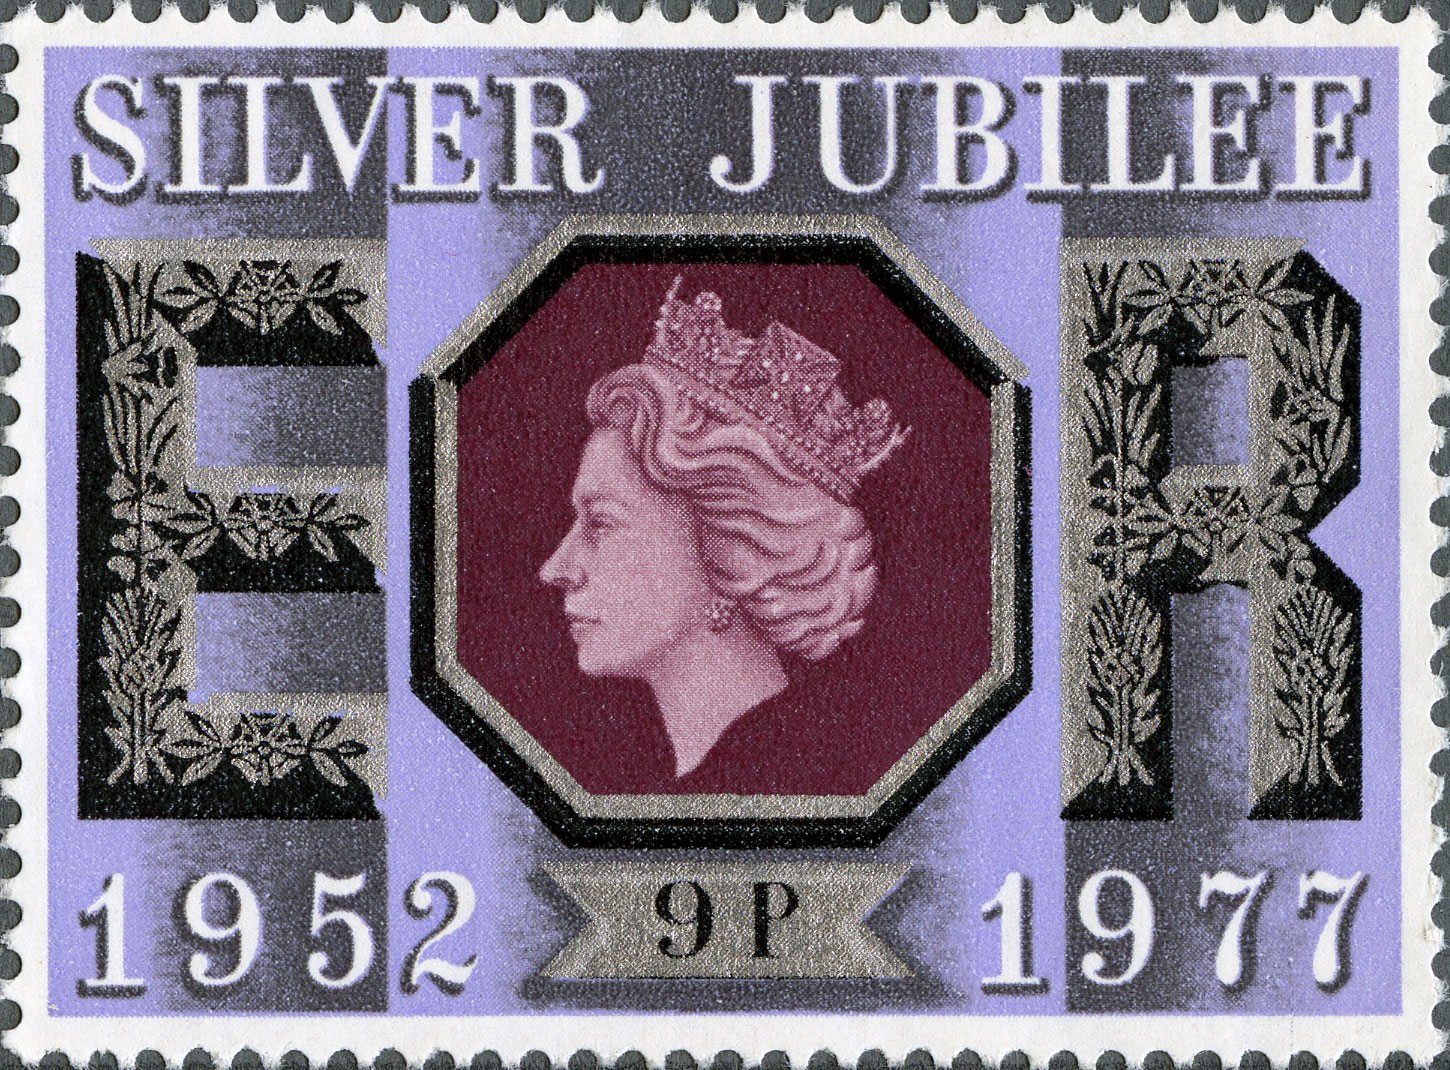 9p, Silver Jubilee